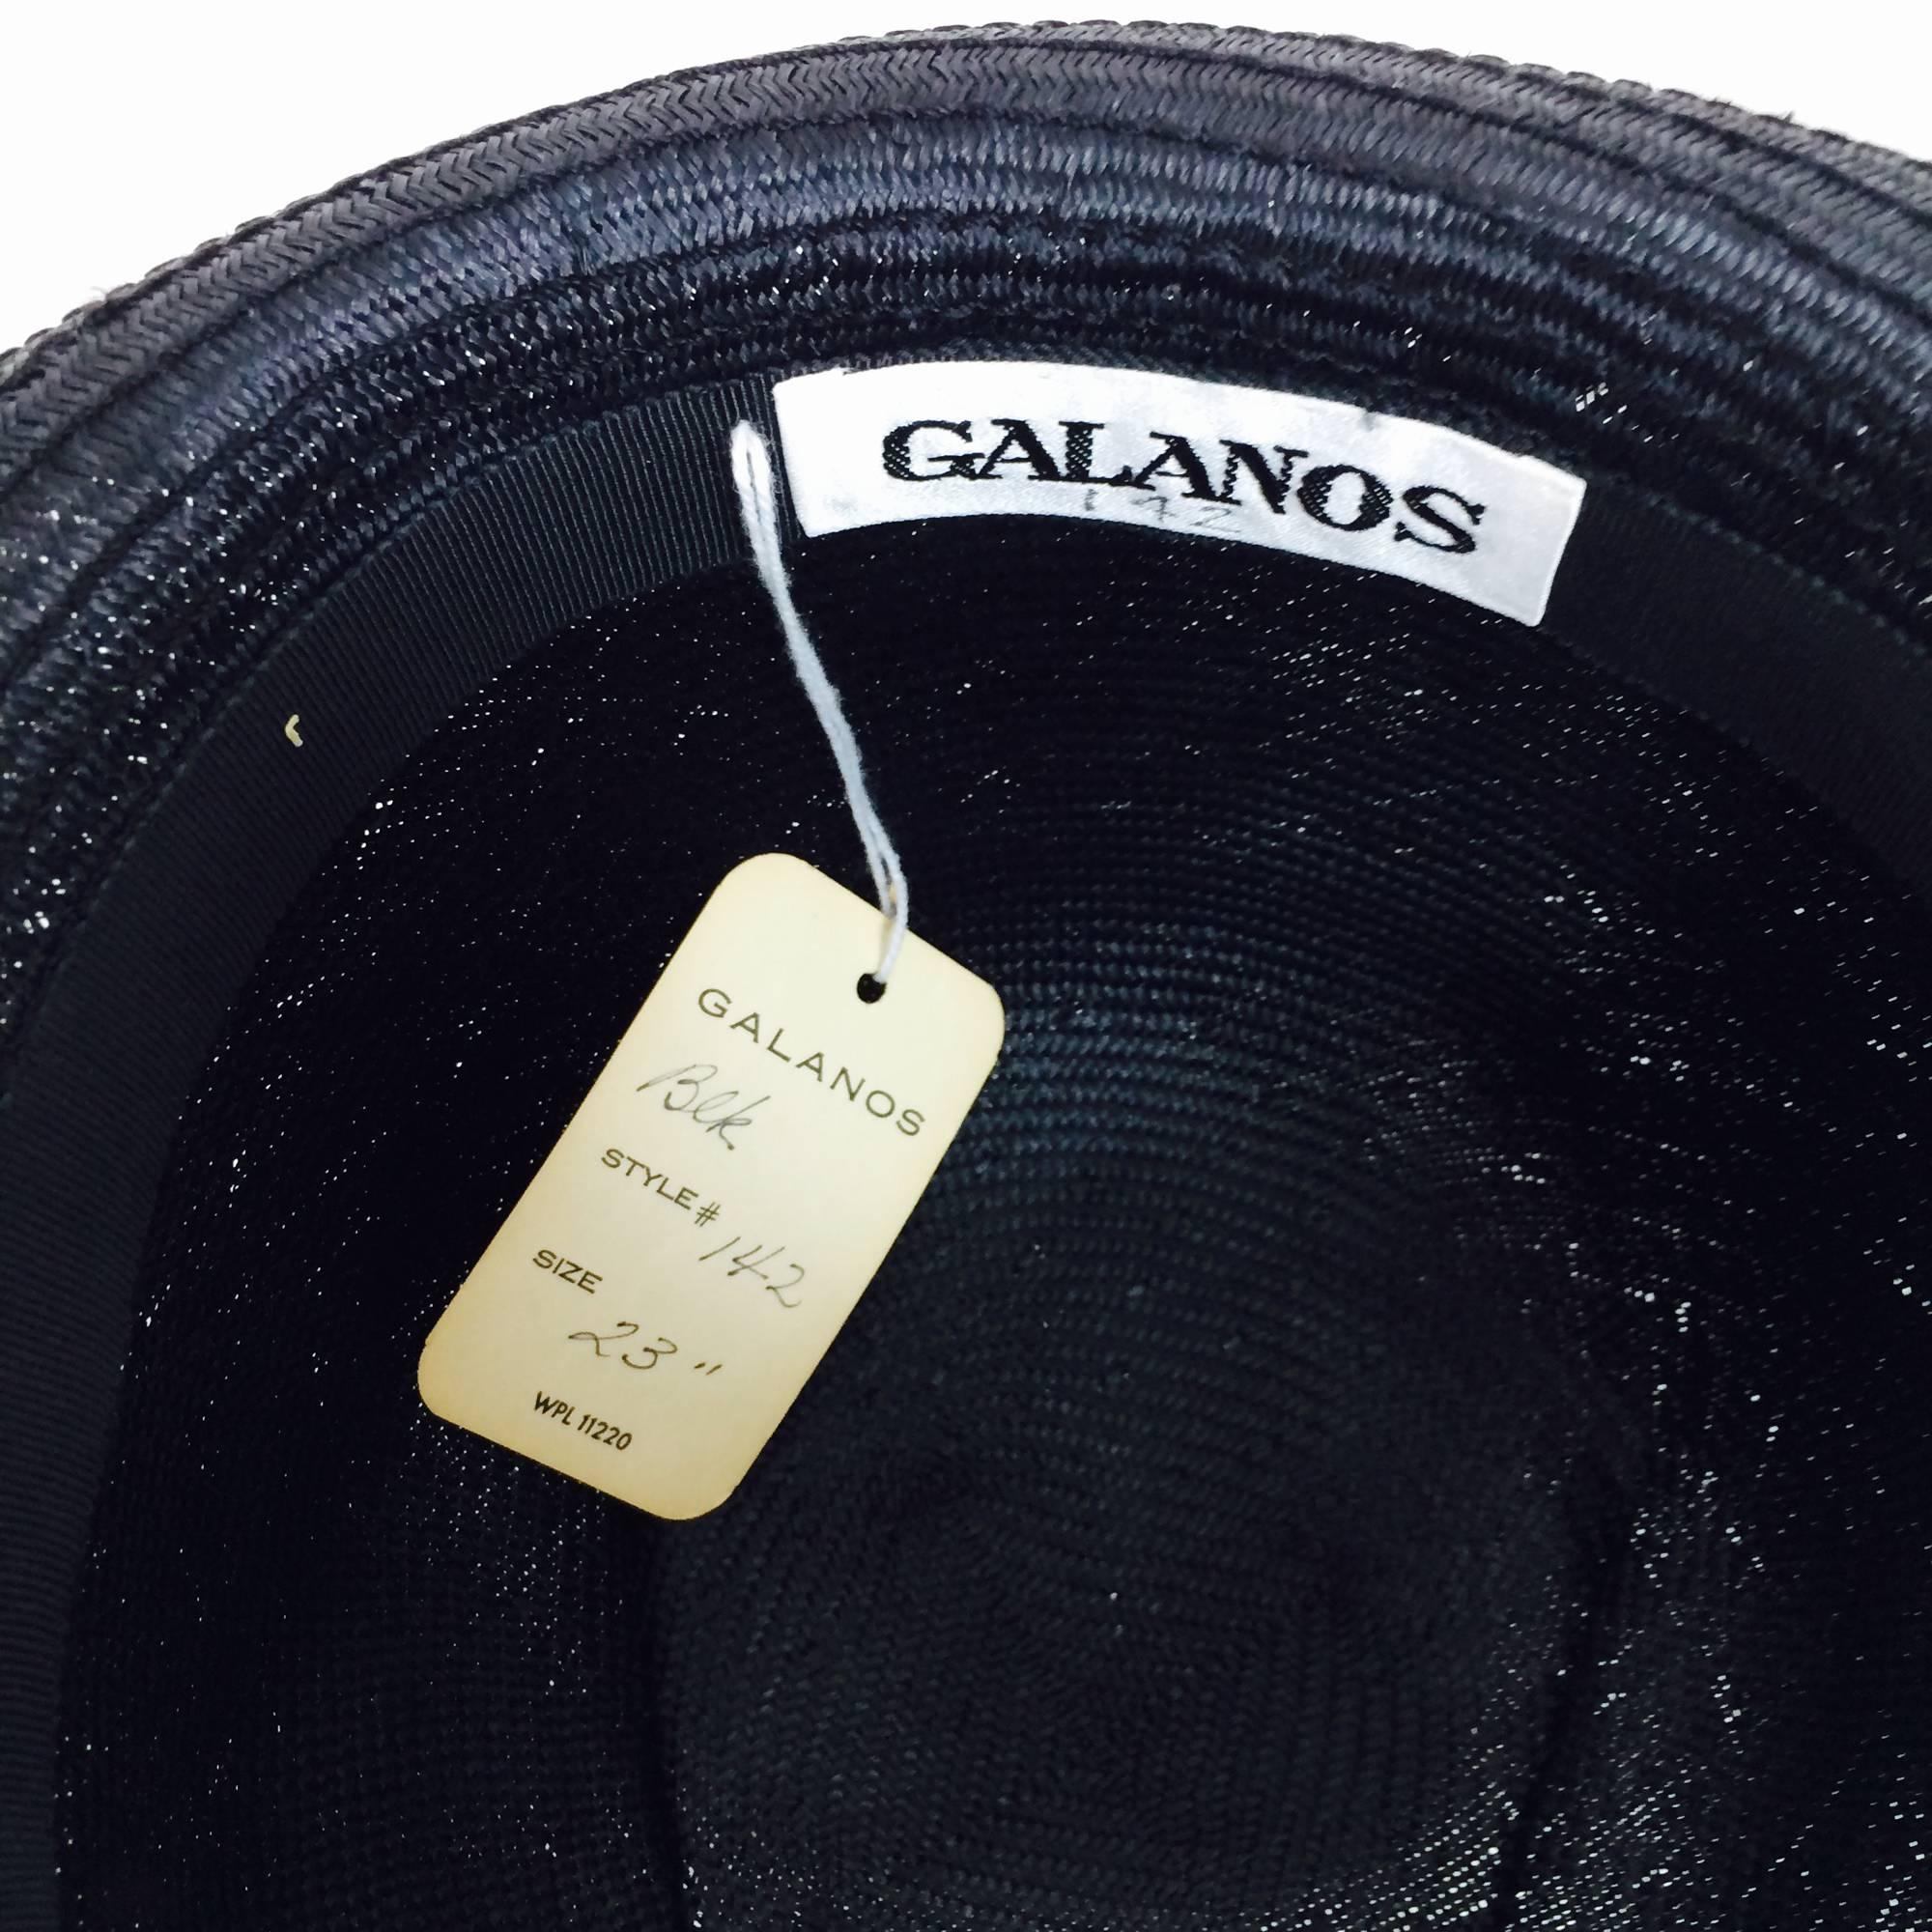 Black Galanos Vintage exterior seam glazed black straw cloche hat 1960s